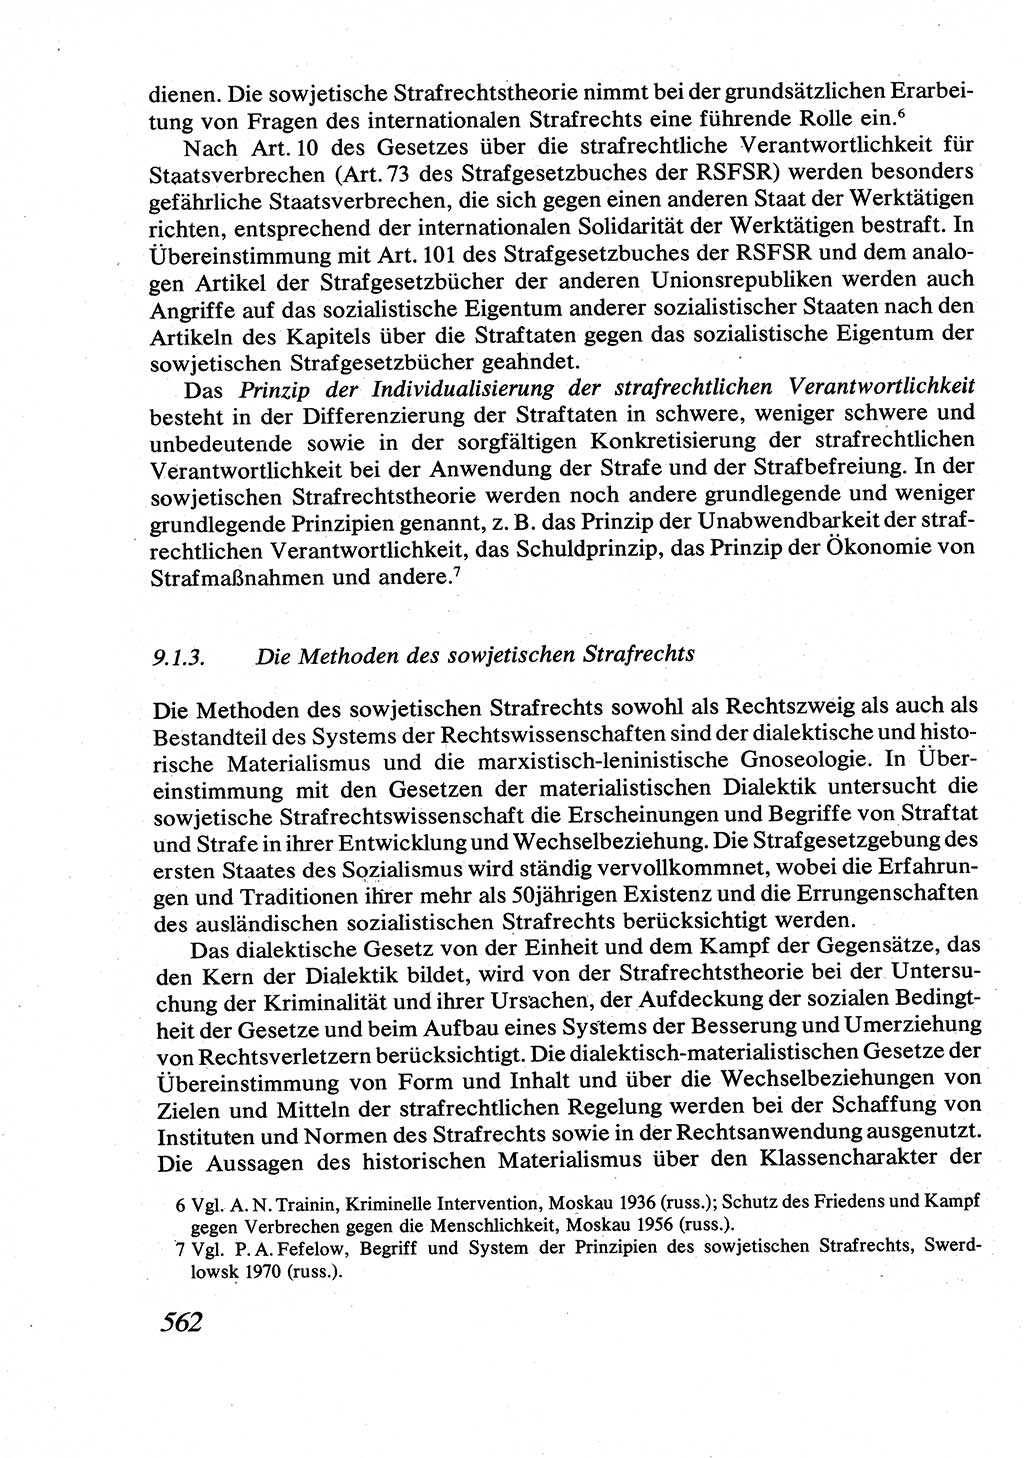 Strafrecht [Deutsche Demokratische Republik (DDR)], Allgemeiner Teil, Lehrbuch 1976, Seite 562 (Strafr. DDR AT Lb. 1976, S. 562)